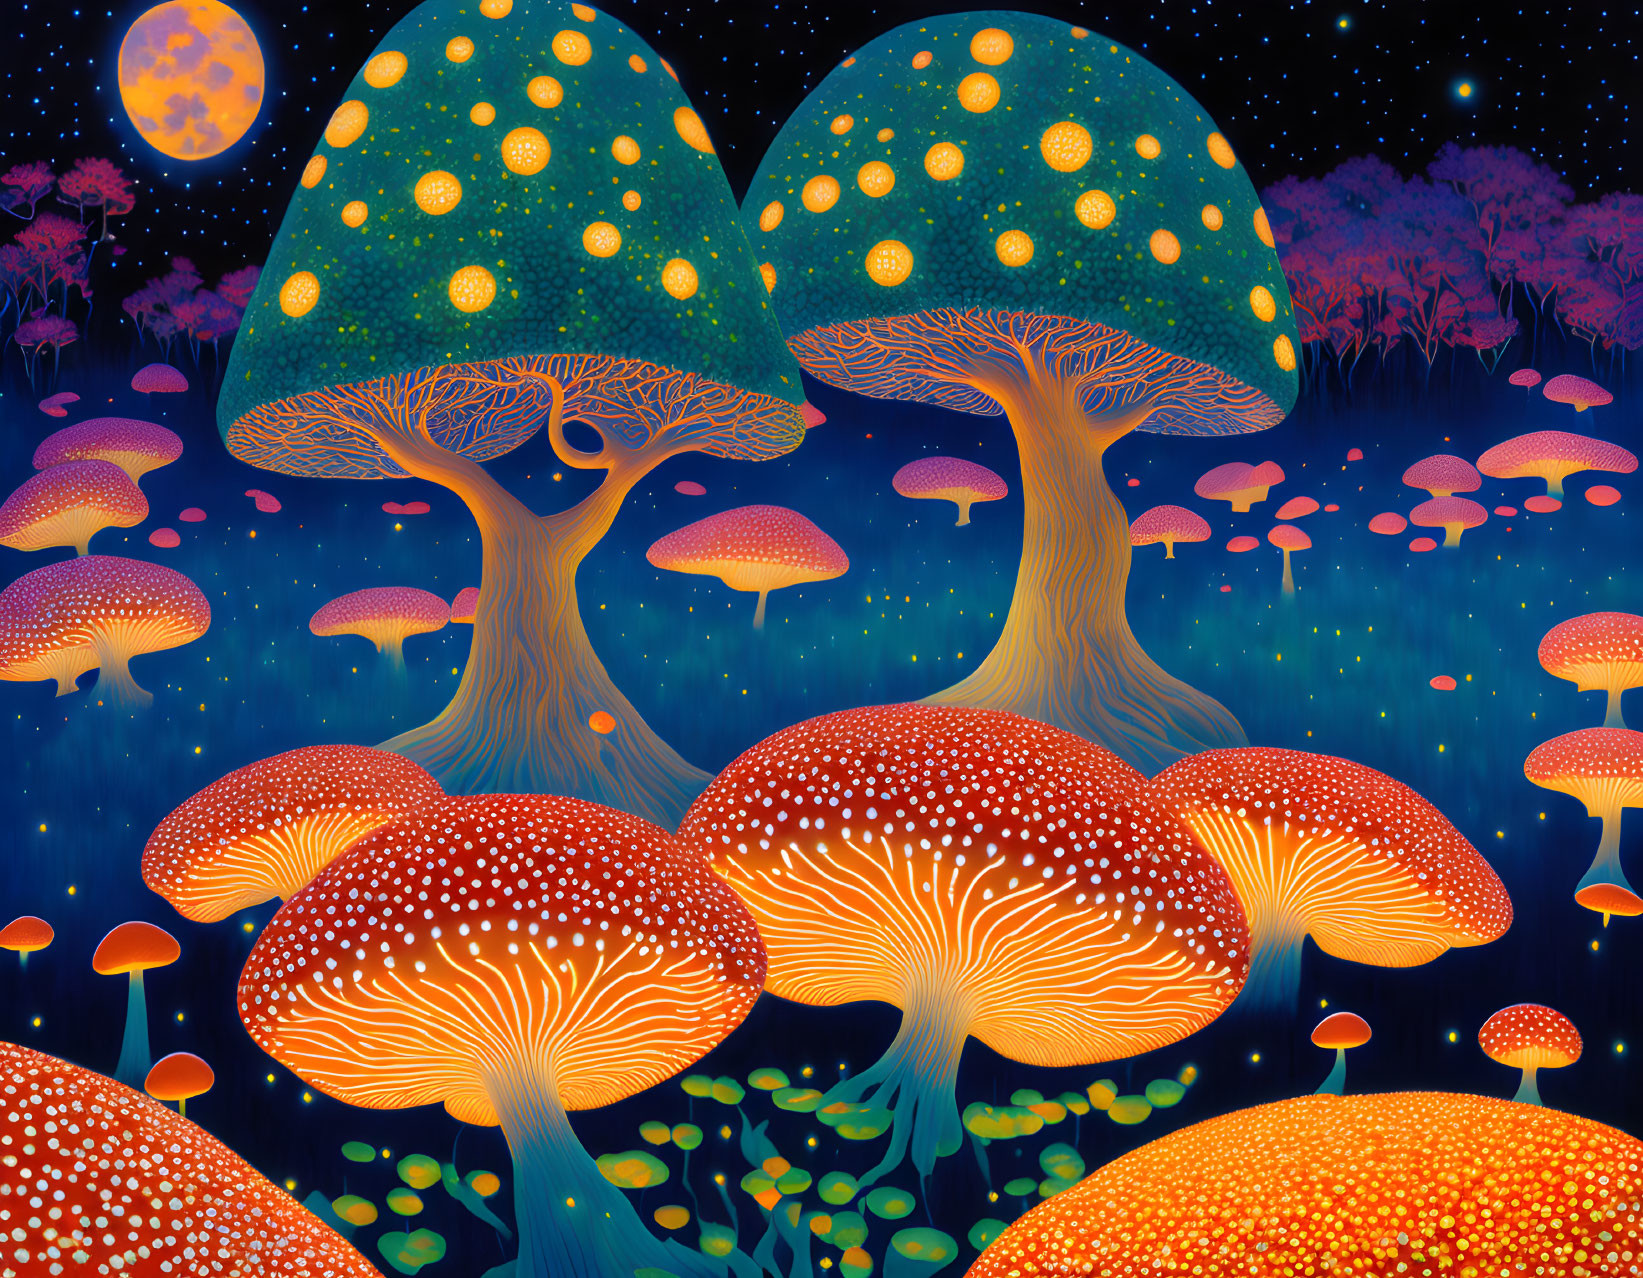 Moonlight fungi night